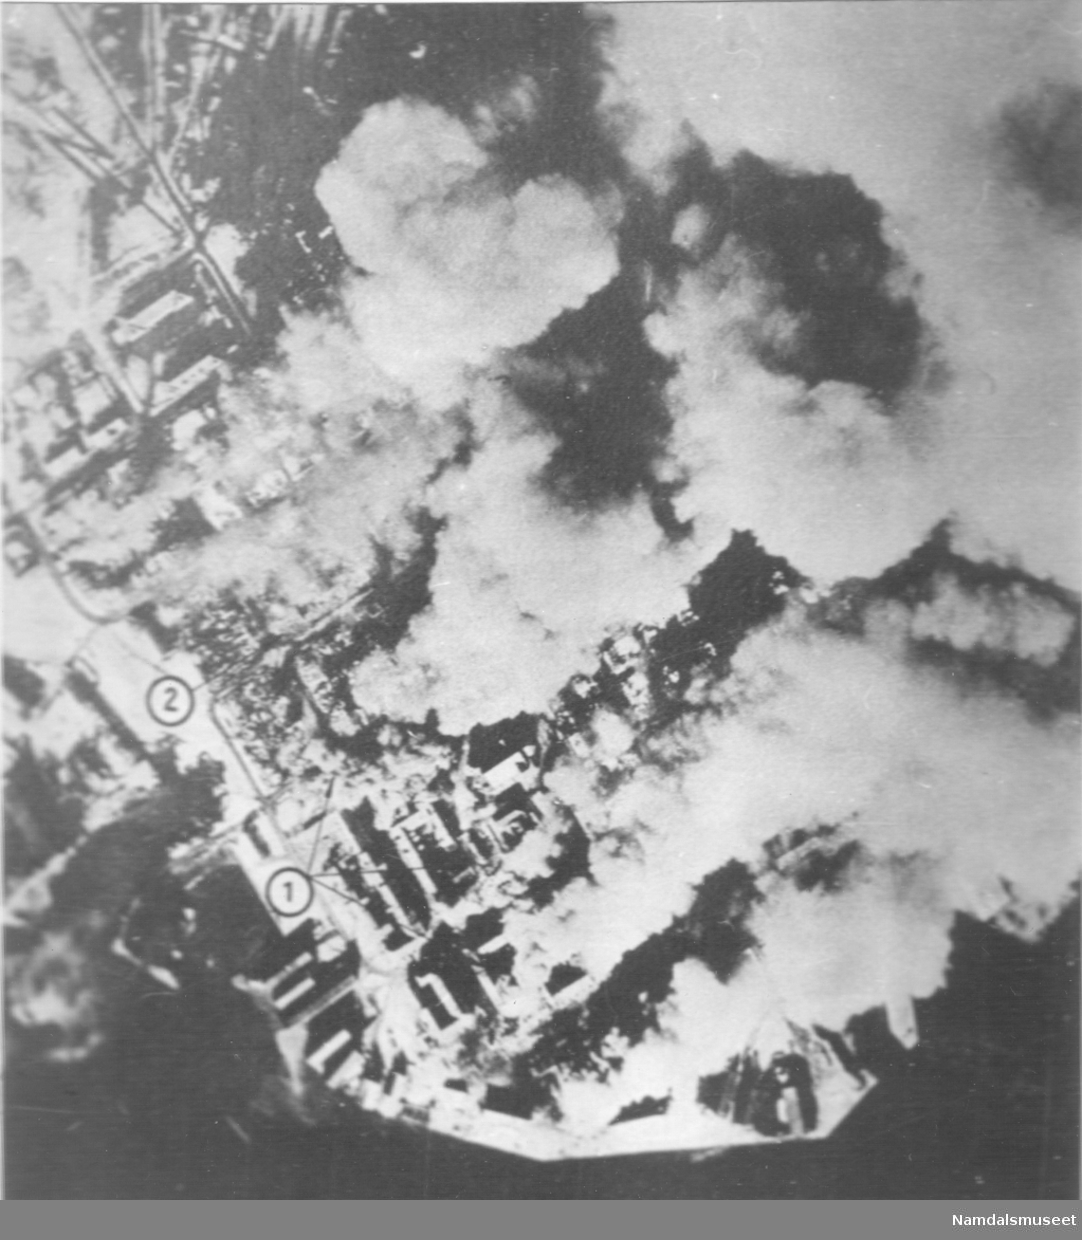 Bybilde, Namsos. April 1940. Byen brenner. Etter Tysk flyfoto.